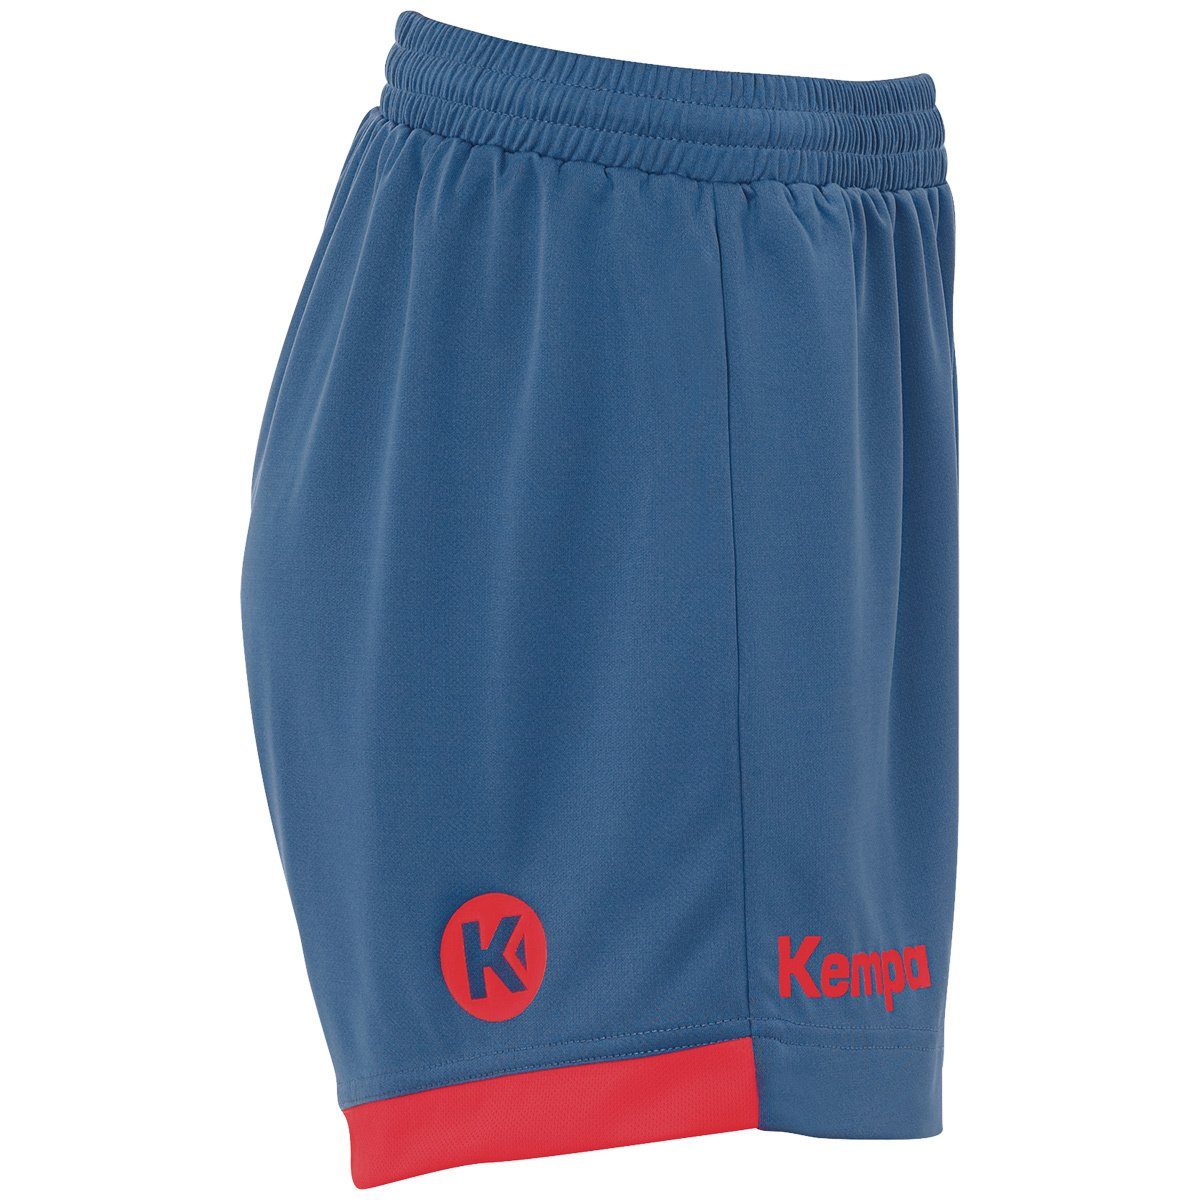 Kempa Shorts Kempa ice WOMEN rot PLAYER grau/fluo Shorts